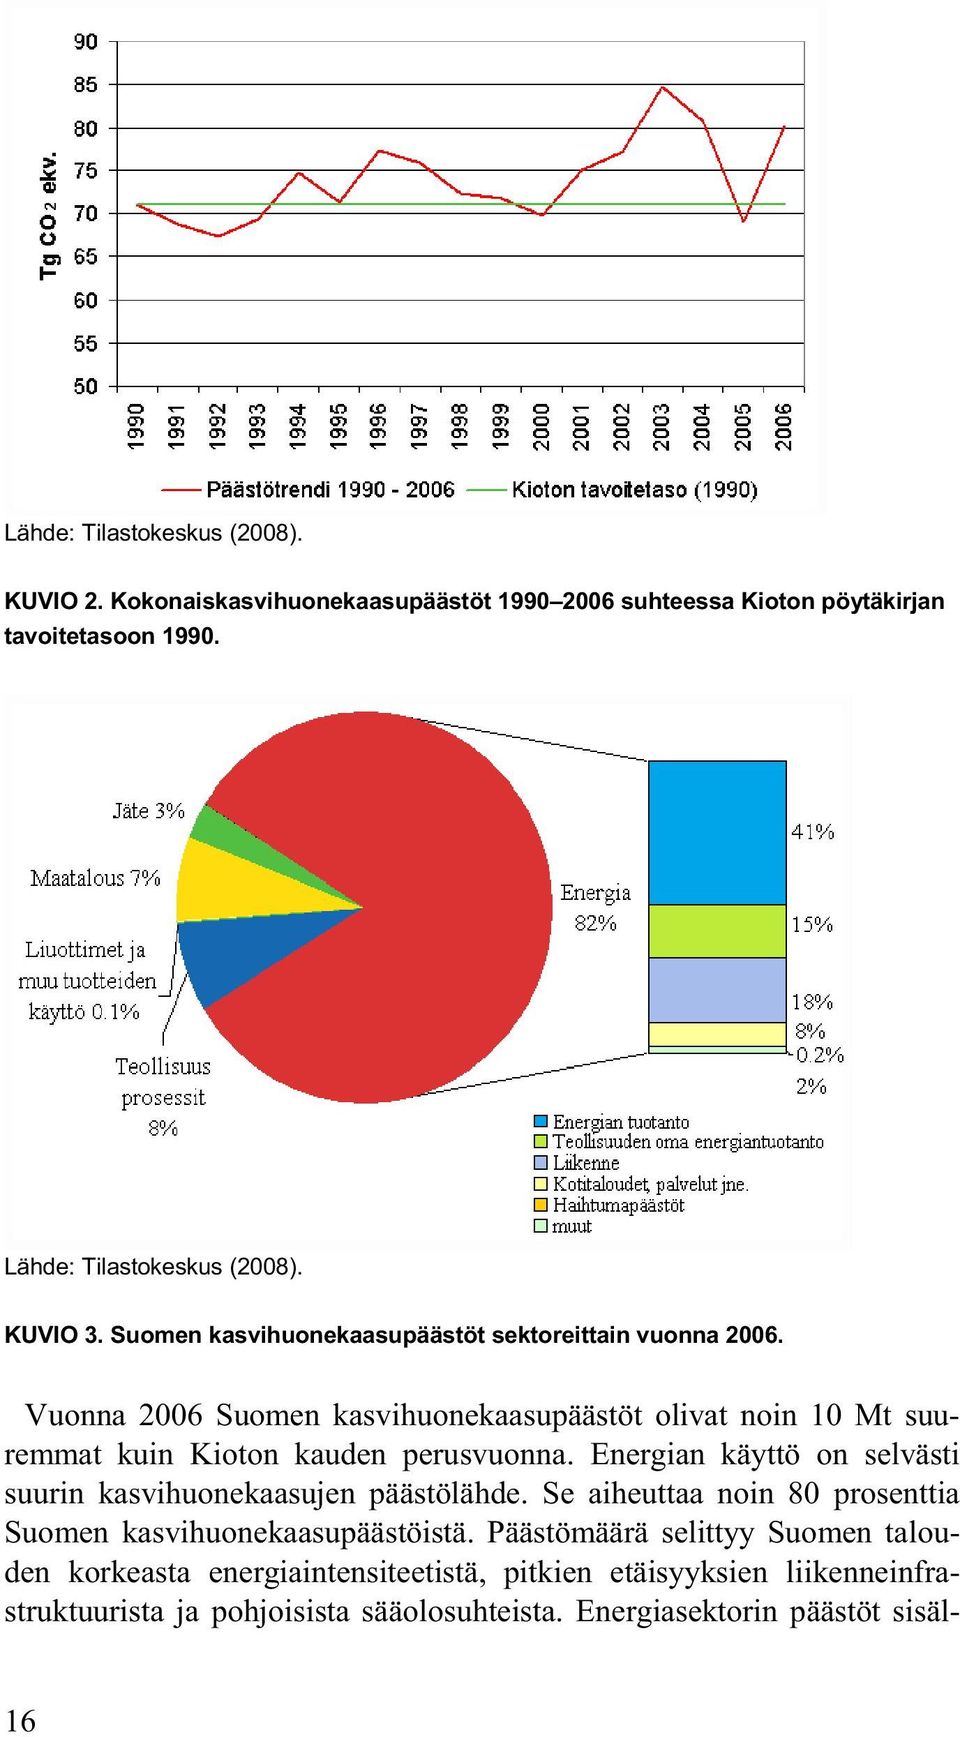 Vuonna 2006 Suomen kasvihuonekaasupäästöt olivat noin 10 Mt suuremmat kuin Kioton kauden perusvuonna.